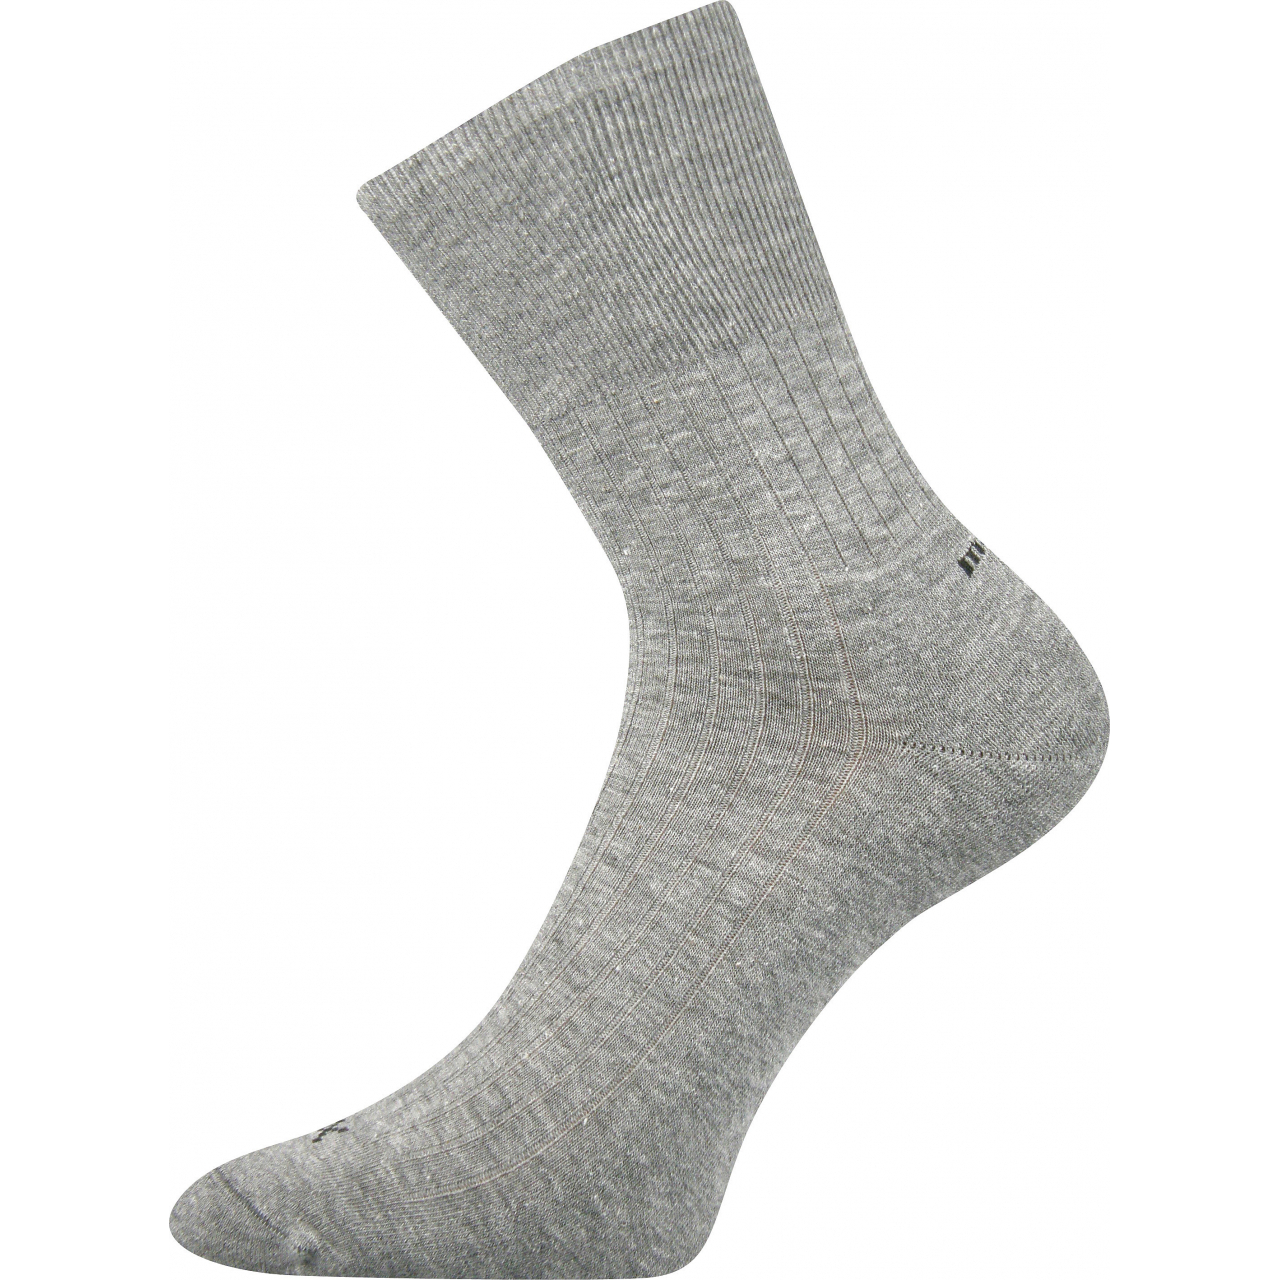 Ponožky zdravotní Corsa Medicine - šedé, 43-46